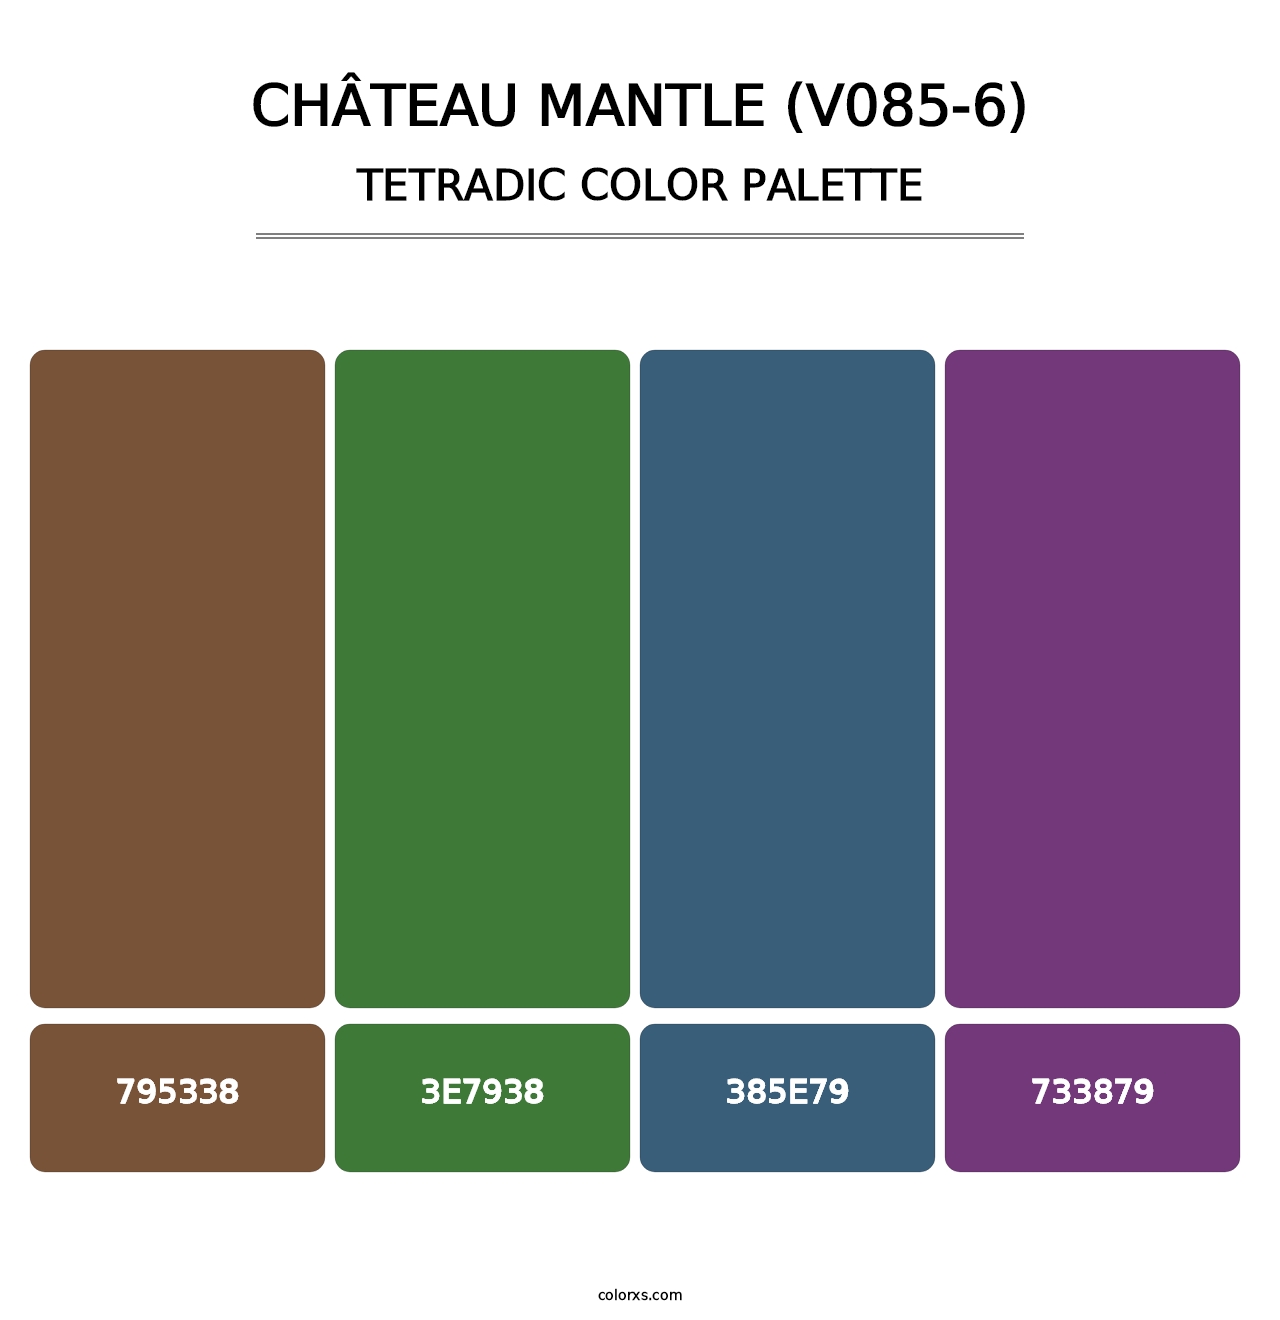 Château Mantle (V085-6) - Tetradic Color Palette